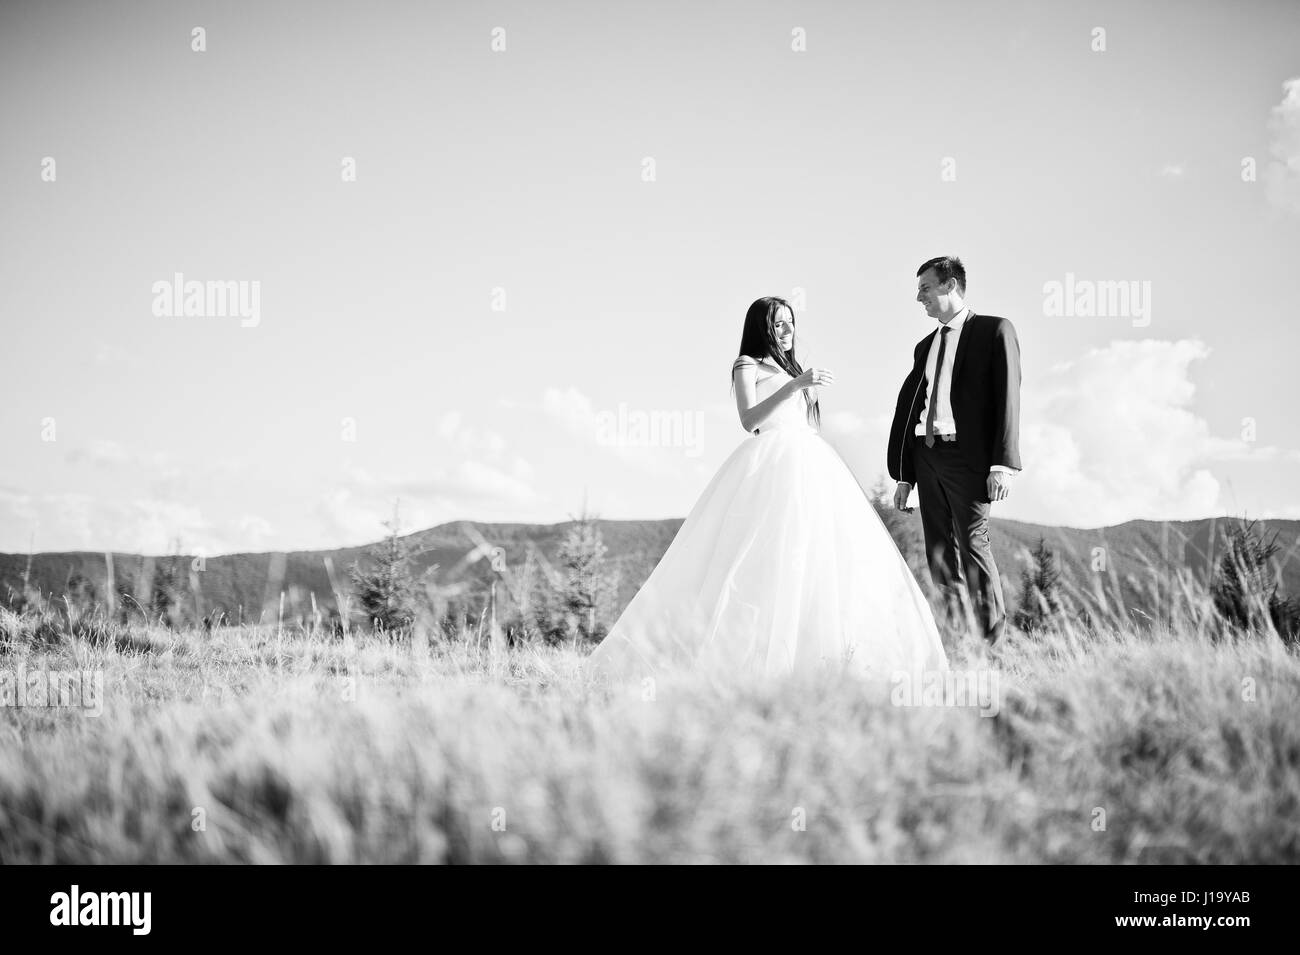 Lovely wedding couple at amazing landscapes of Carpathian mountains. Stock Photo